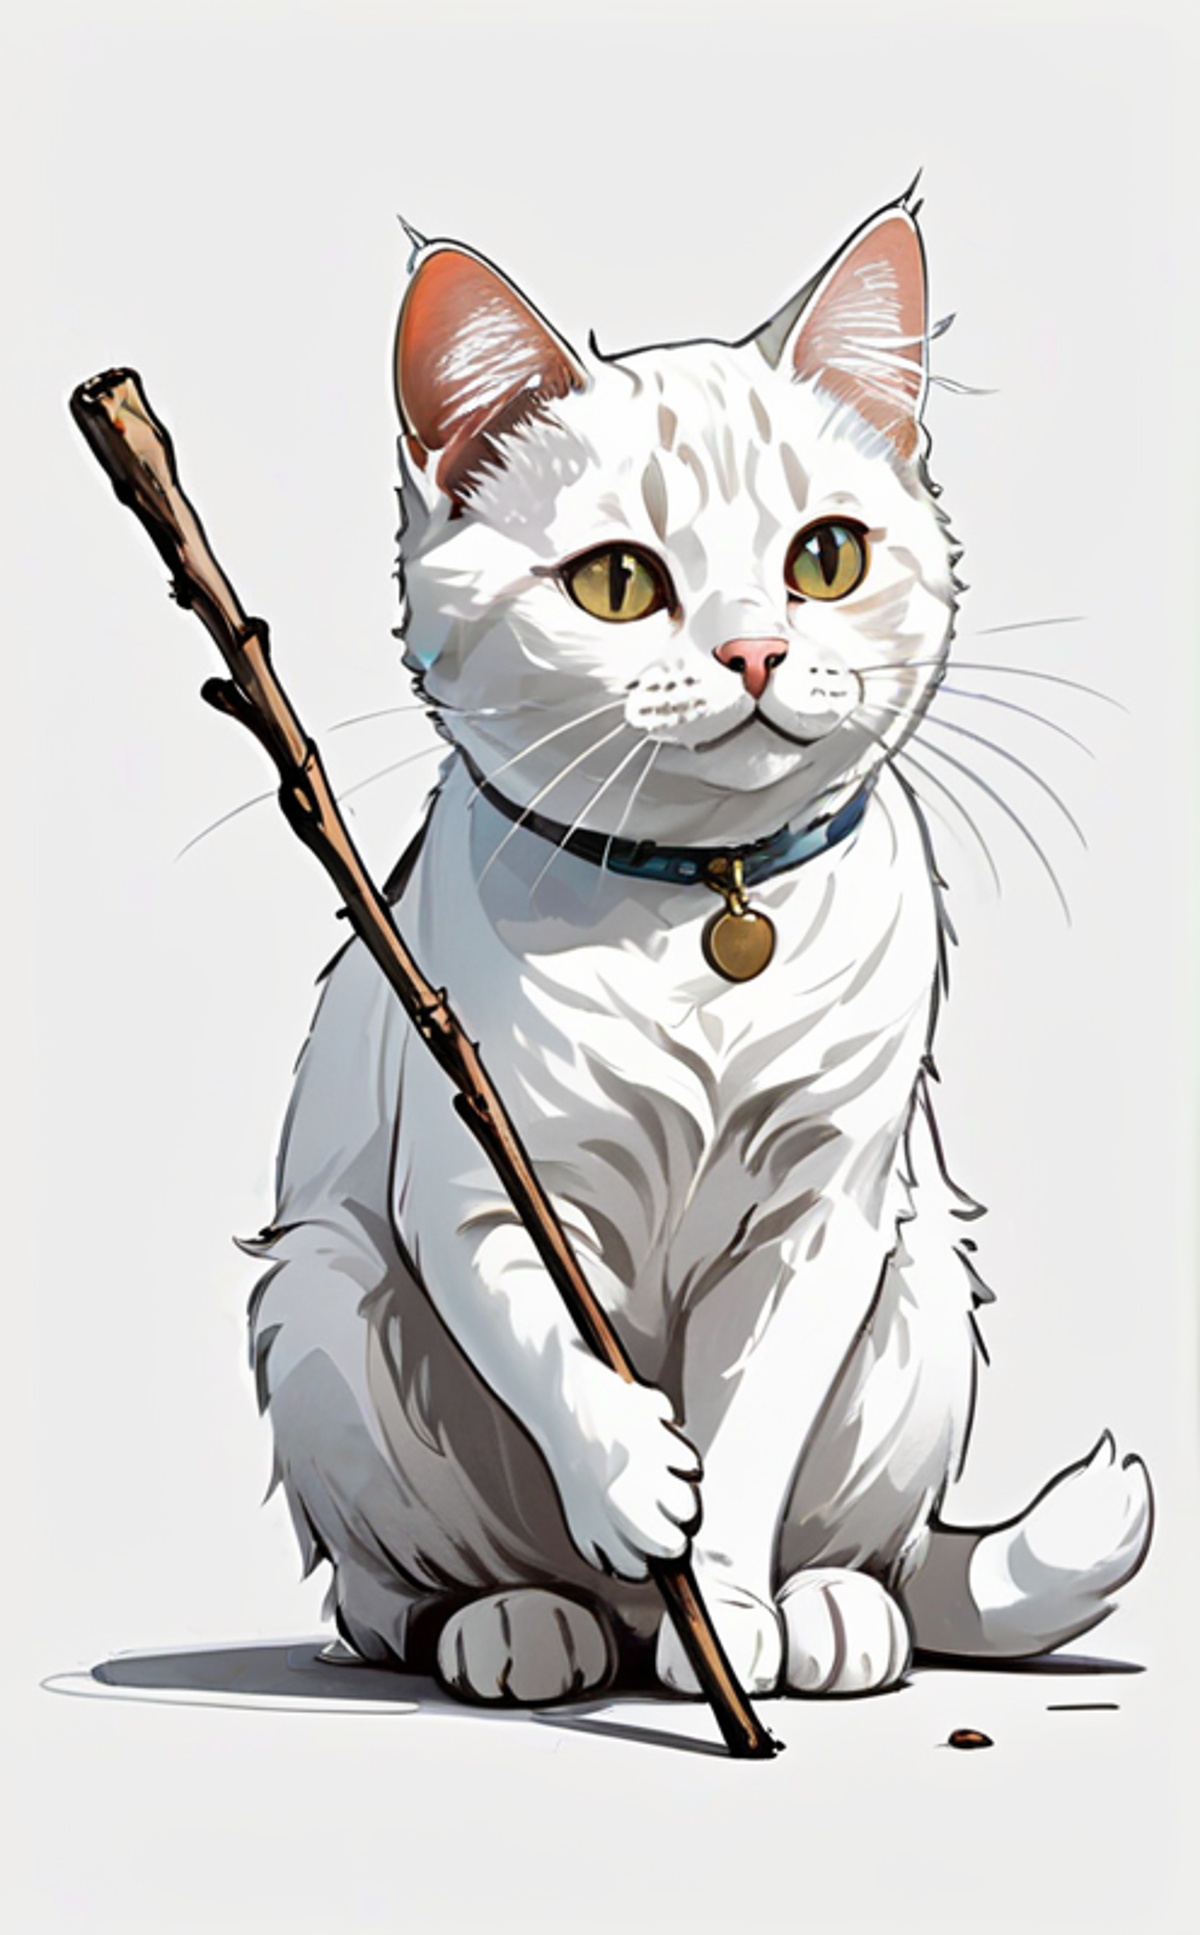 特価即納猫 絵 11番 大丈夫 「yufu猫」 絵画